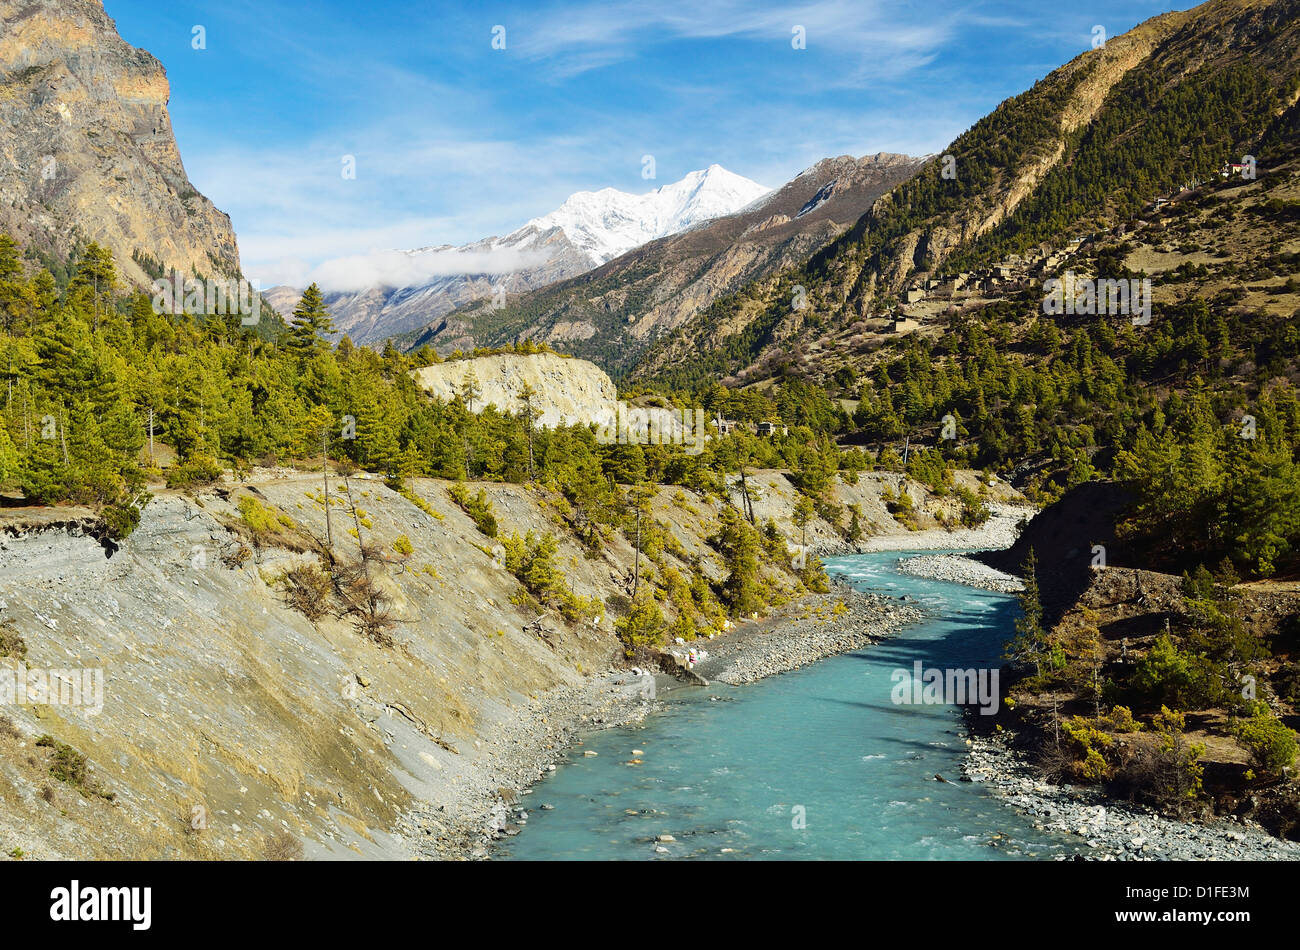 Marsyangdi River Valley, de l'Annapurna Conservation Area, Gandaki, Région de l'Ouest (Pashchimanchal), Népal, Himalaya, Asie Banque D'Images